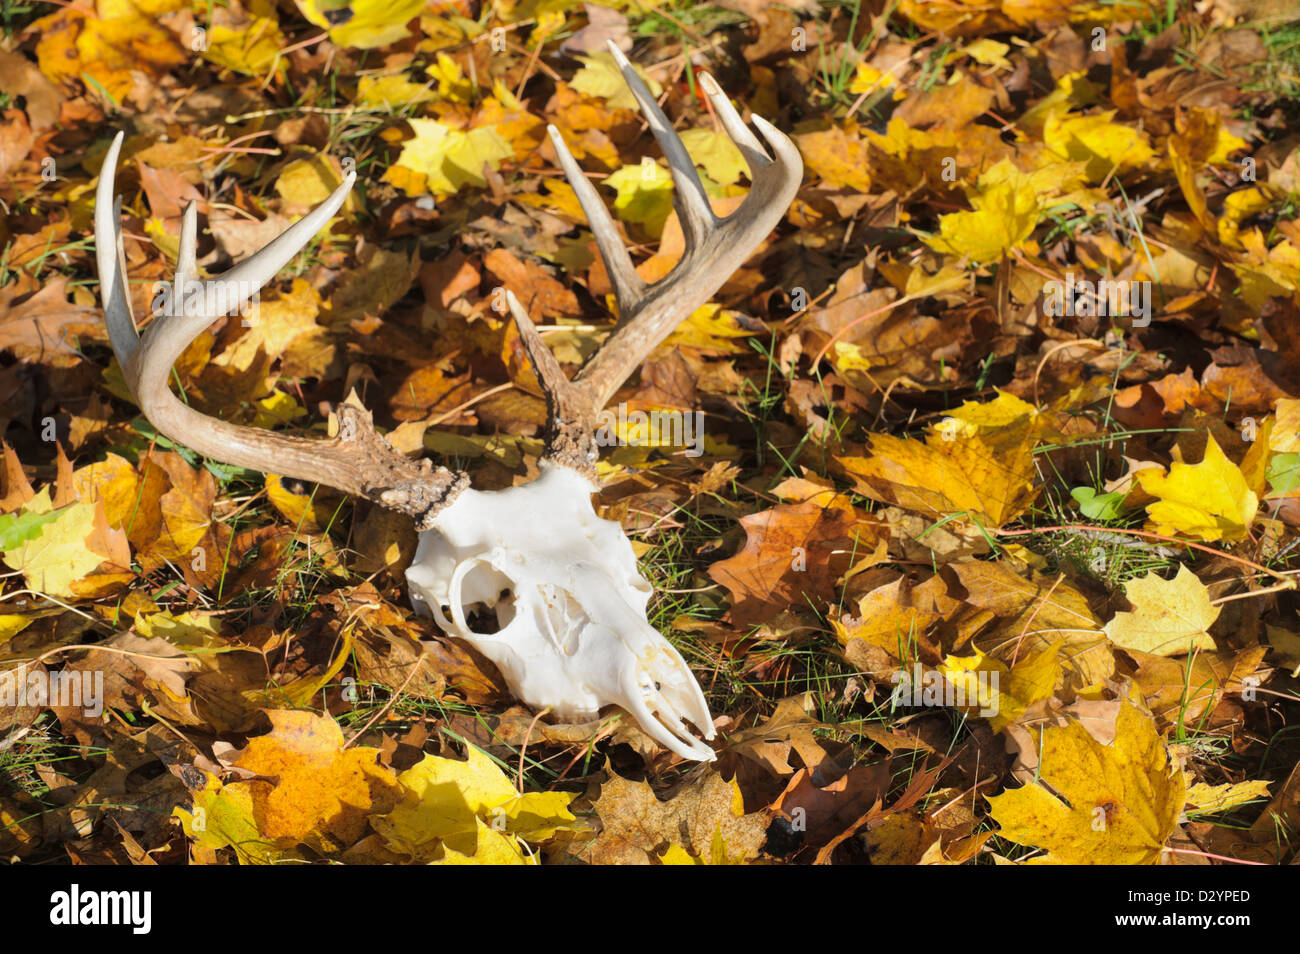 Hirsch Schädel mit Geweih Verlegung im gelben Herbst aufgegeben Blätter im Sonnenlicht, eine zwölf Punkt Bock Rack. Stockfoto